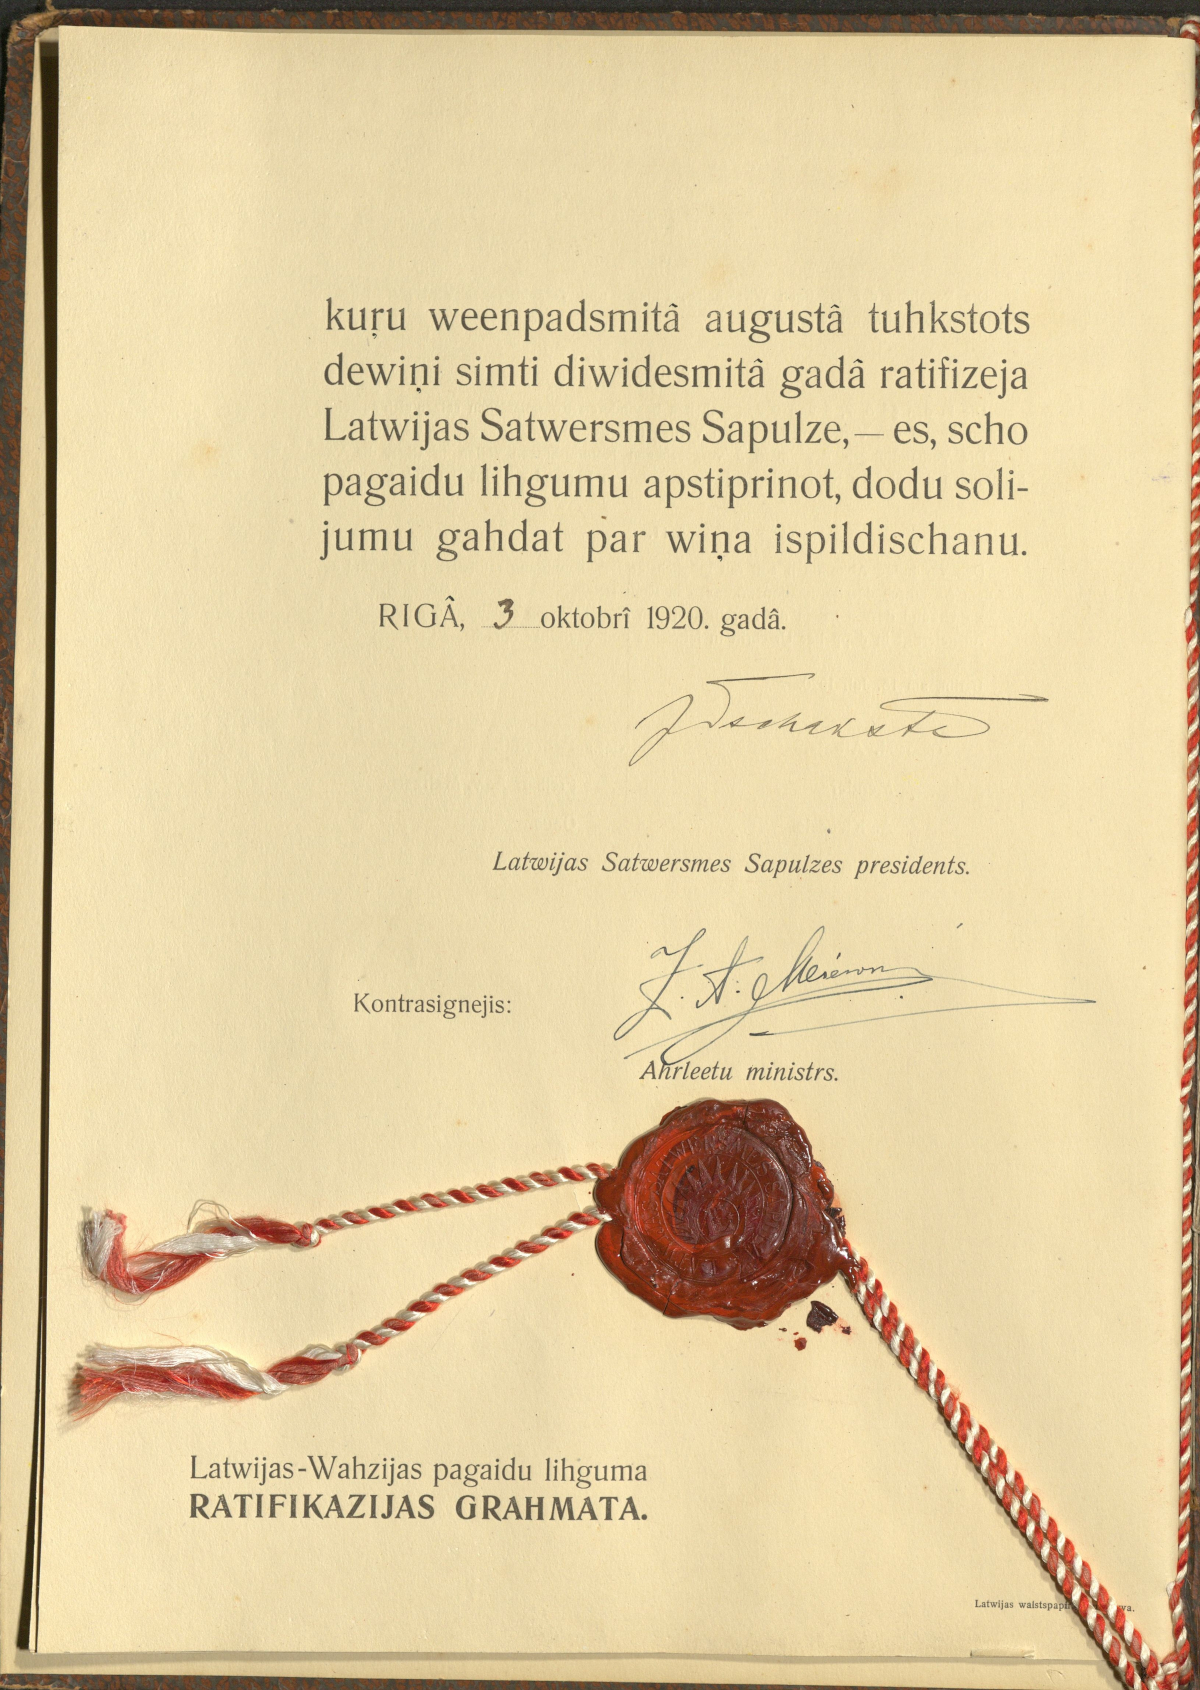 Unterschriftenseite der lettischen Ratifikationsurkunde vom 3. Oktober 1920 zum Vorläufigen Abkommen vom 15. Juli 1920 über die Wiederaufnahme der Beziehungen, Archivsignatur PA AA V 11-LET/2